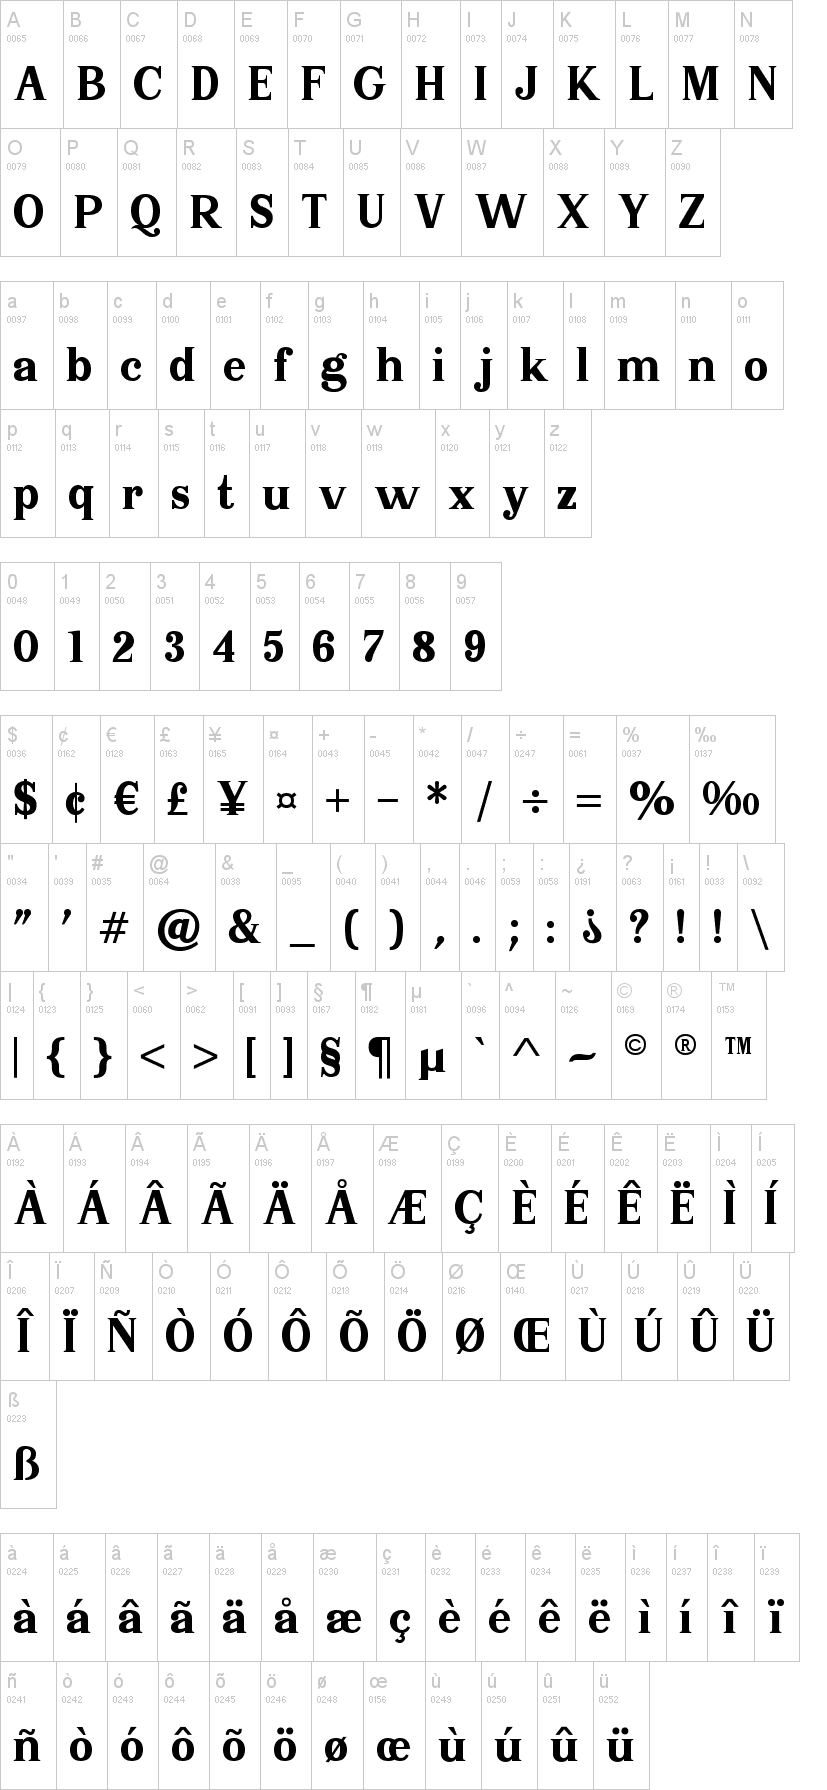 Serif Memorial字符映射图